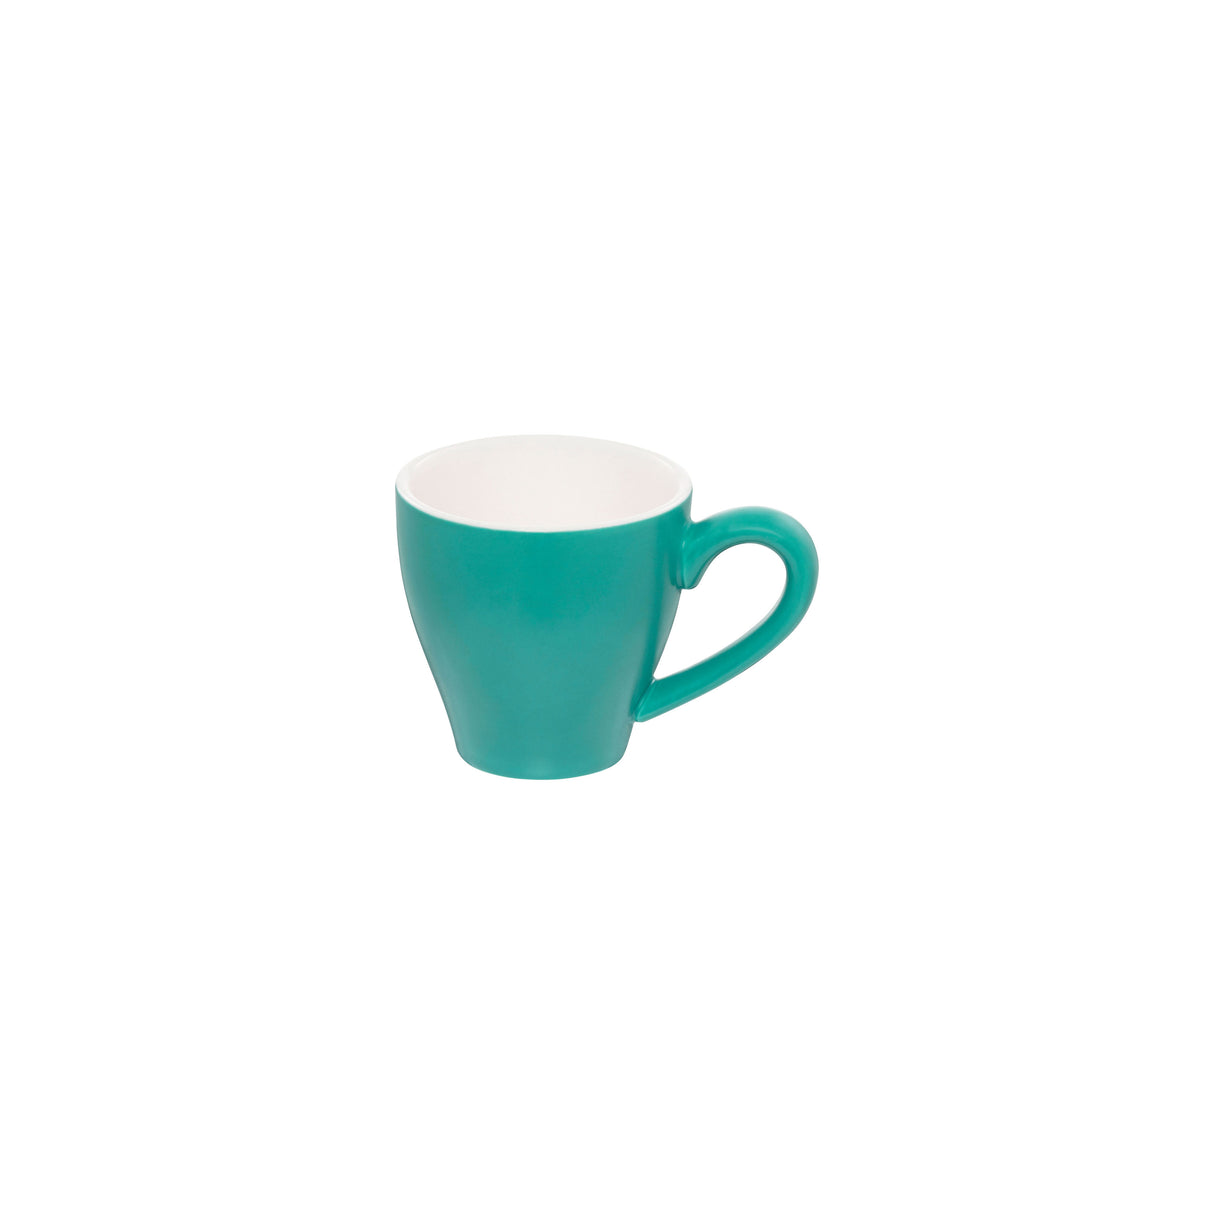 Cappuccino cup - Aqua, 200ml, Cono: Pack of 6